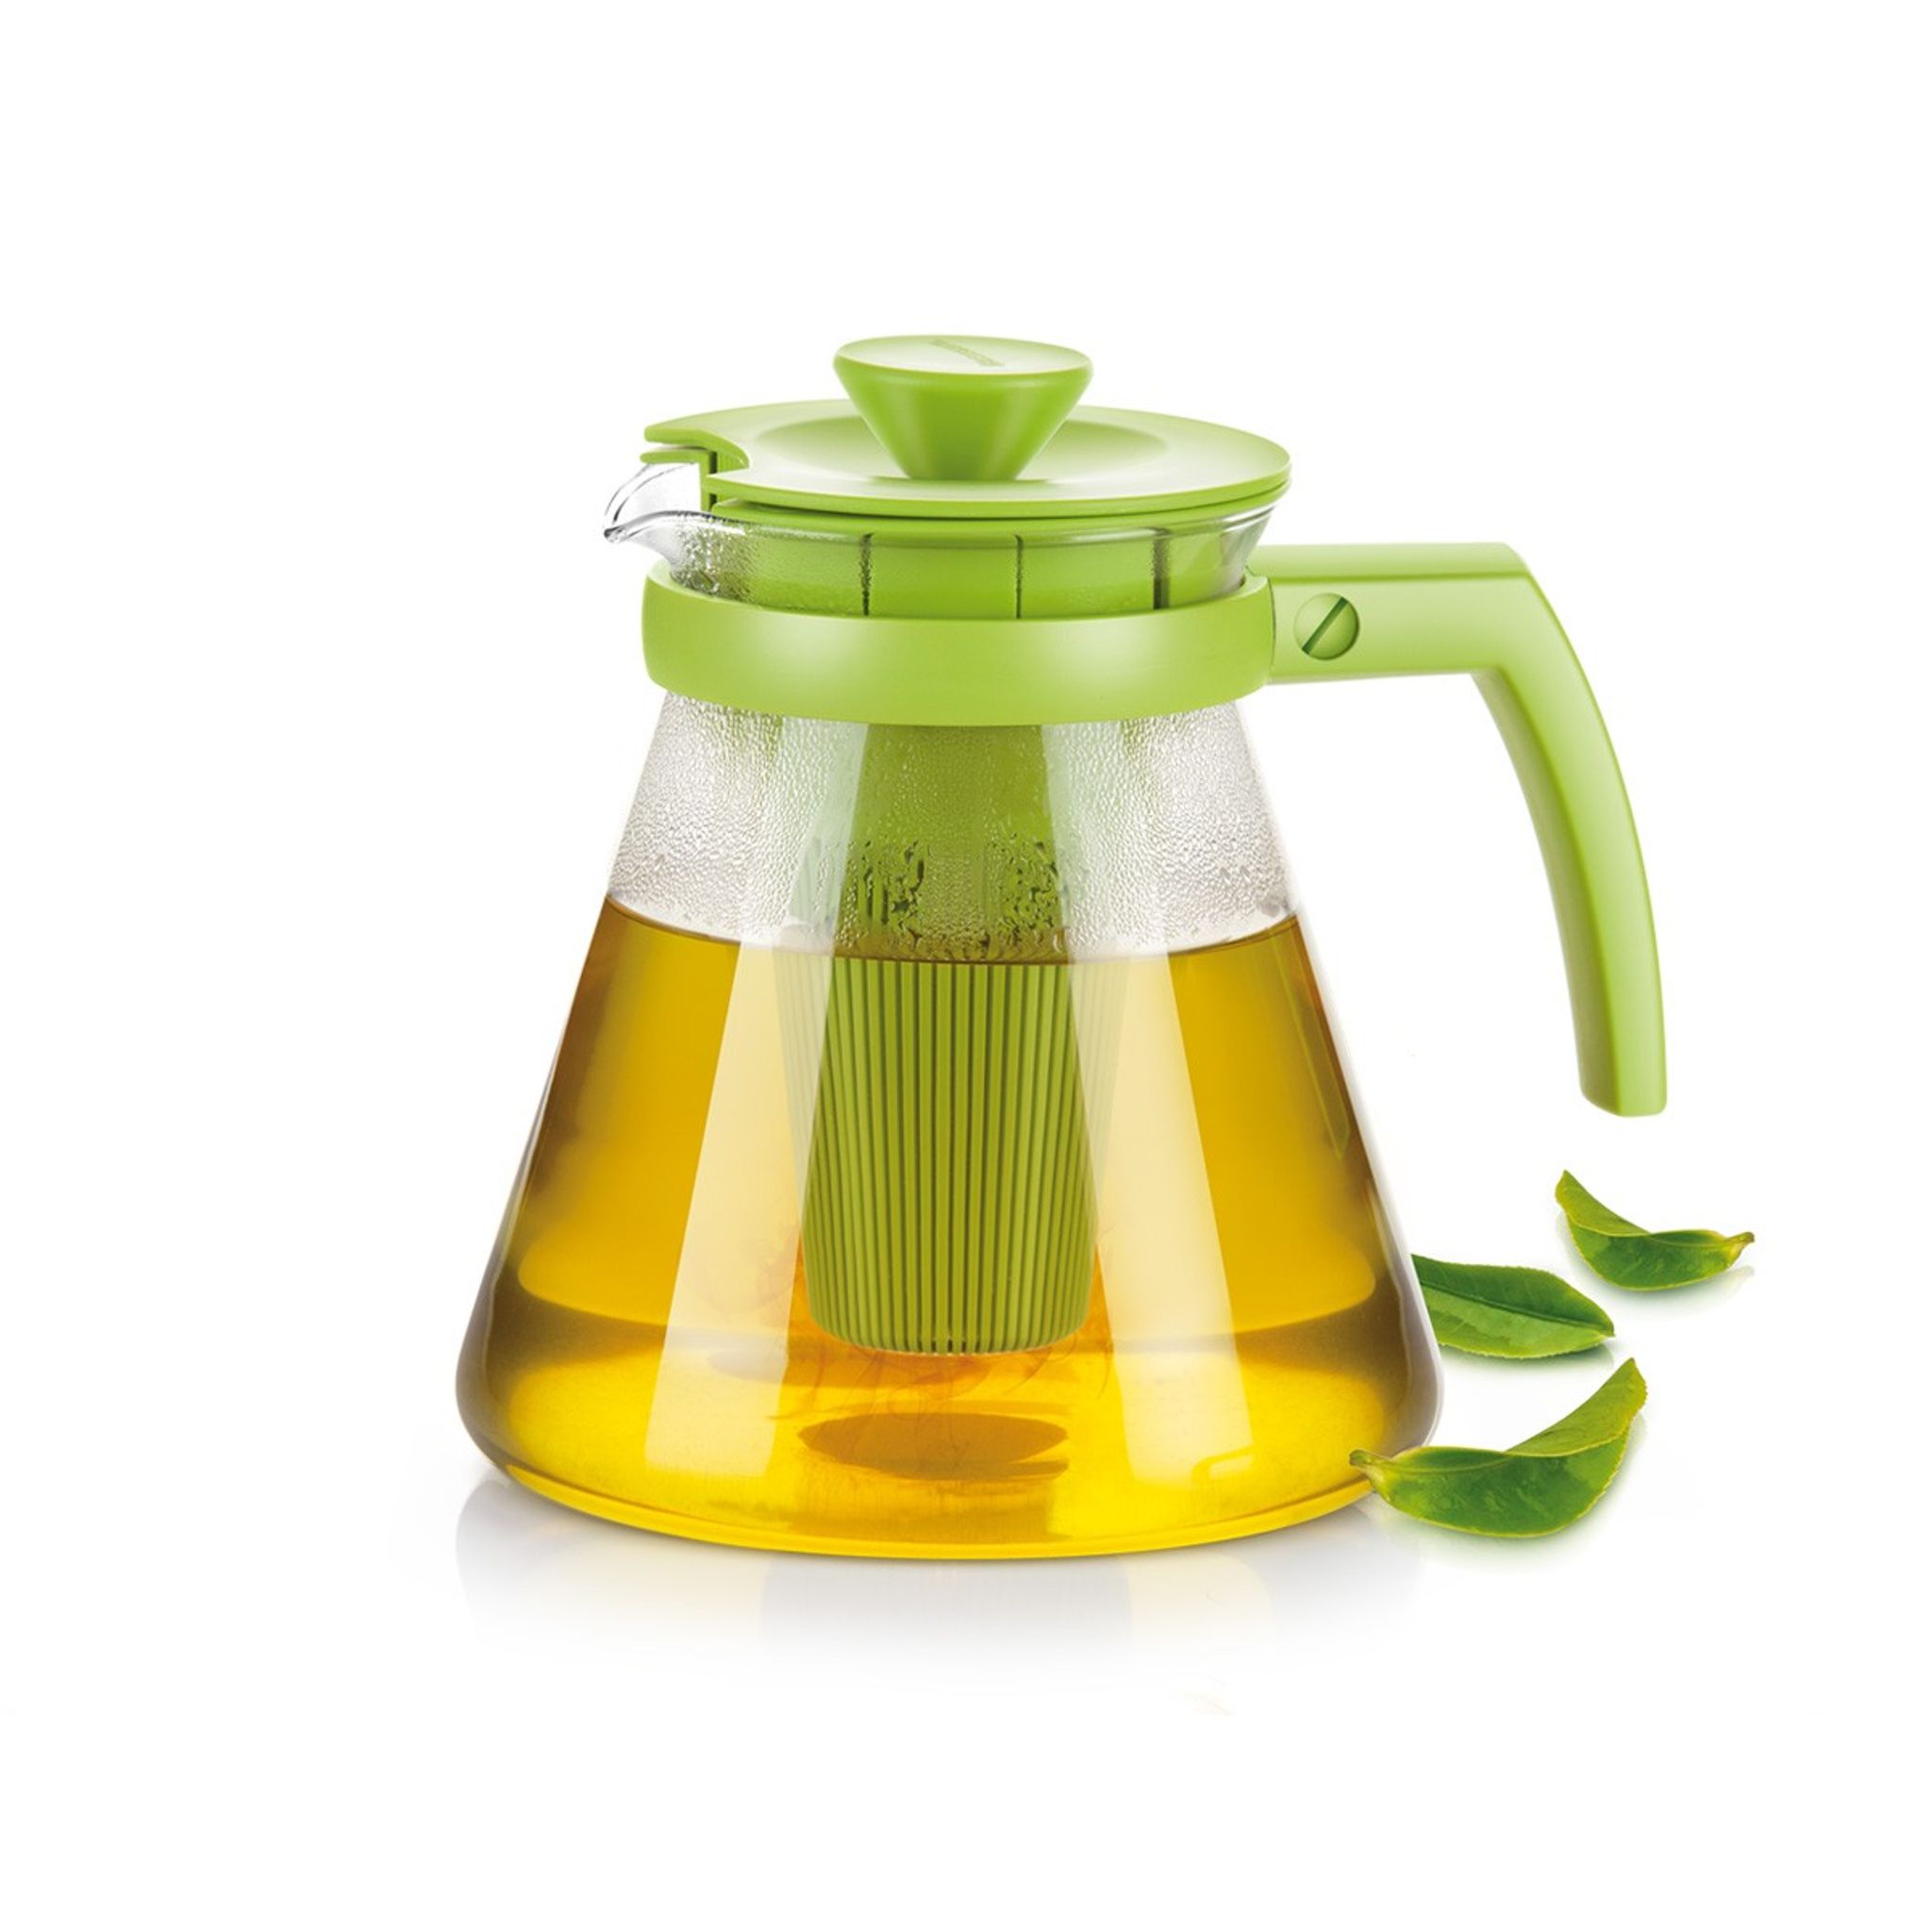 TEO TONE teáskanna, áztatószűrővel, 1,25 l, zöld